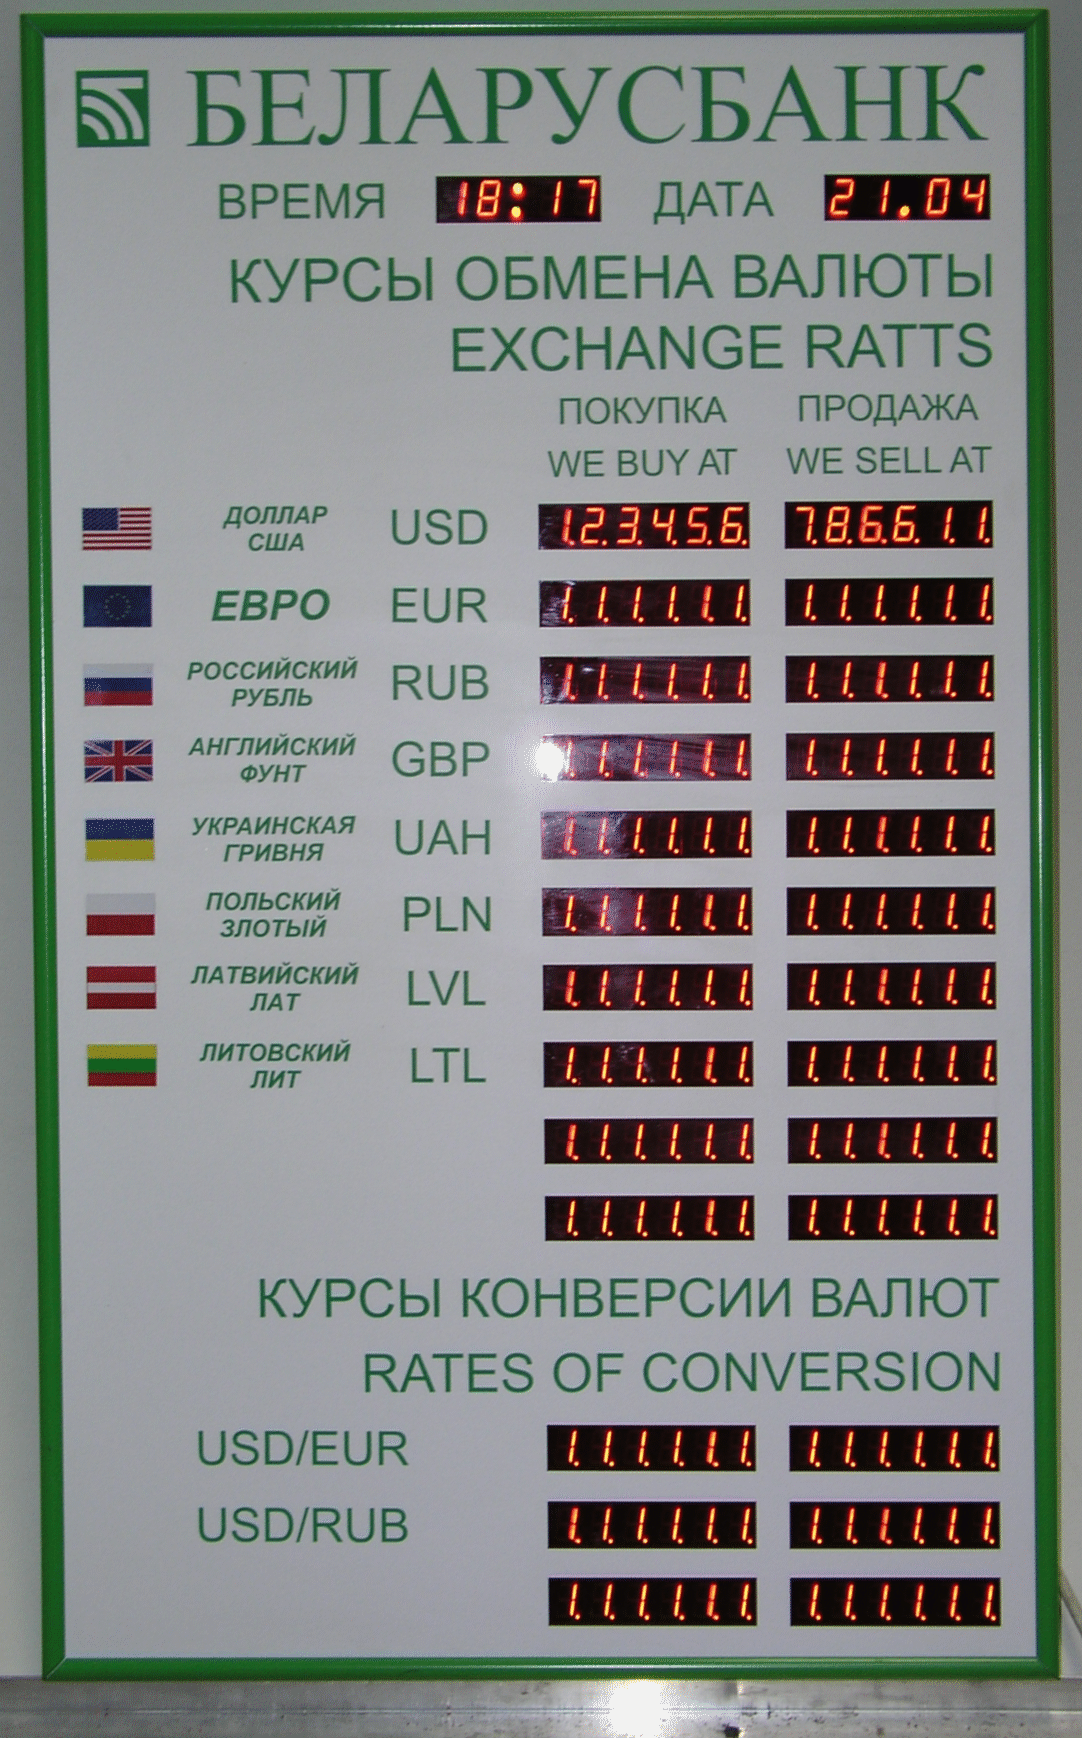 Беларусбанк обмен валюты время работы биткоин как украсть